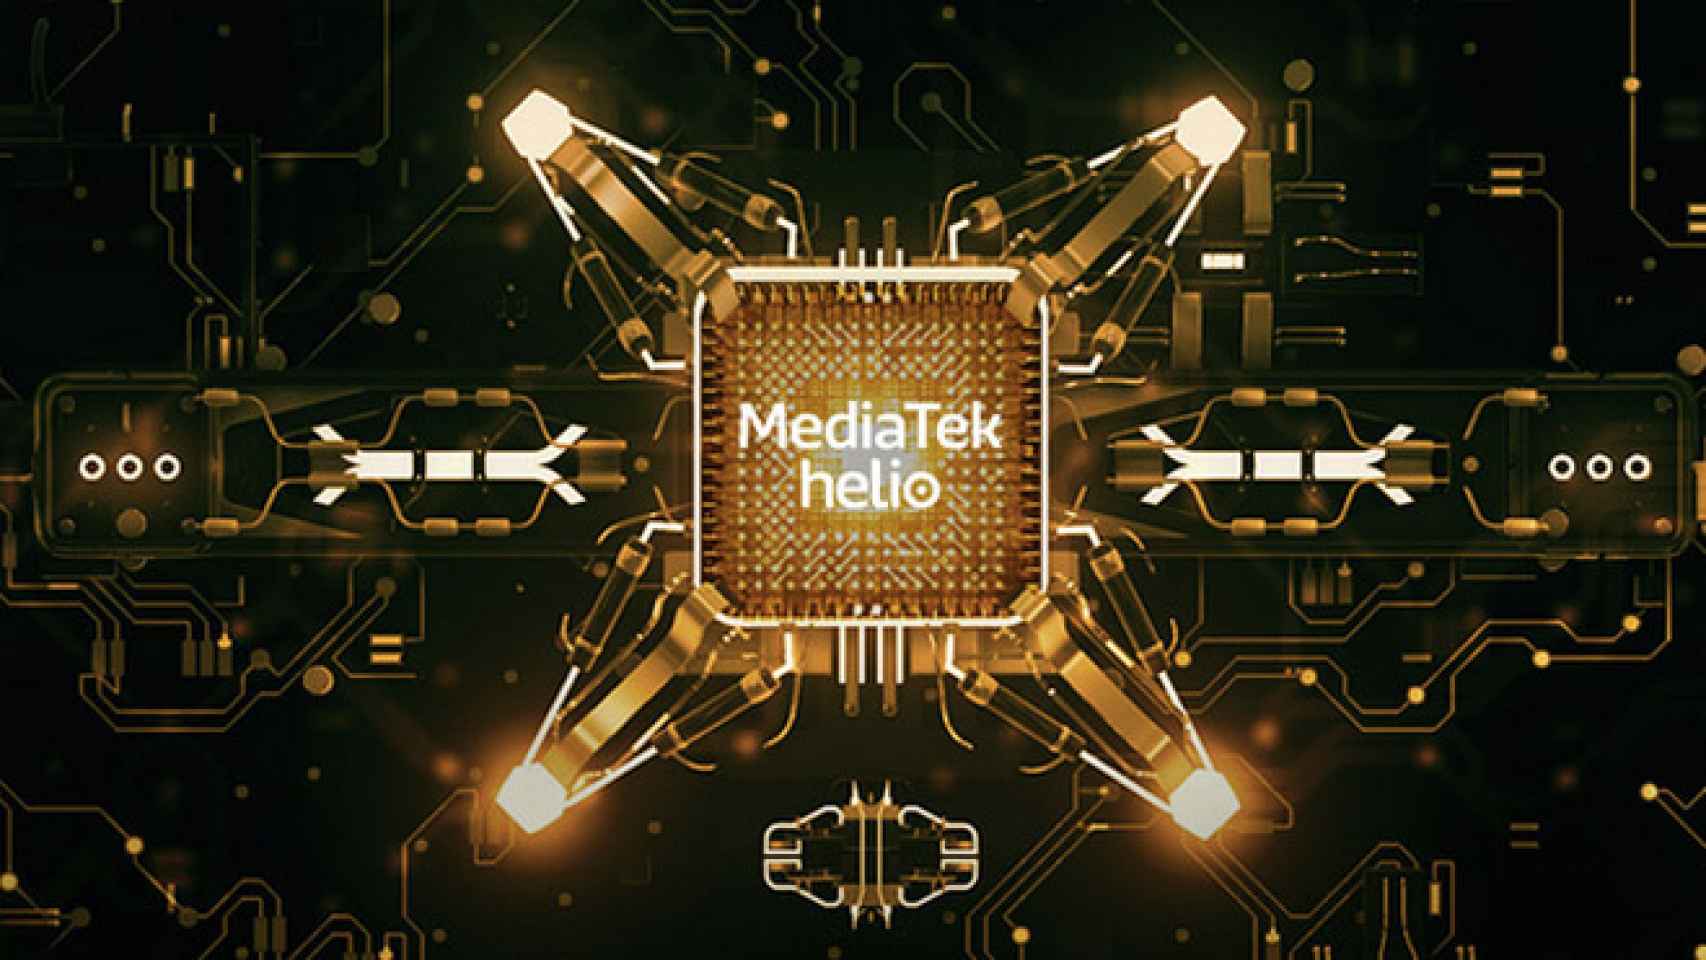 Mediatek tiene un nuevo procesador para móviles gaming, el Helio G80